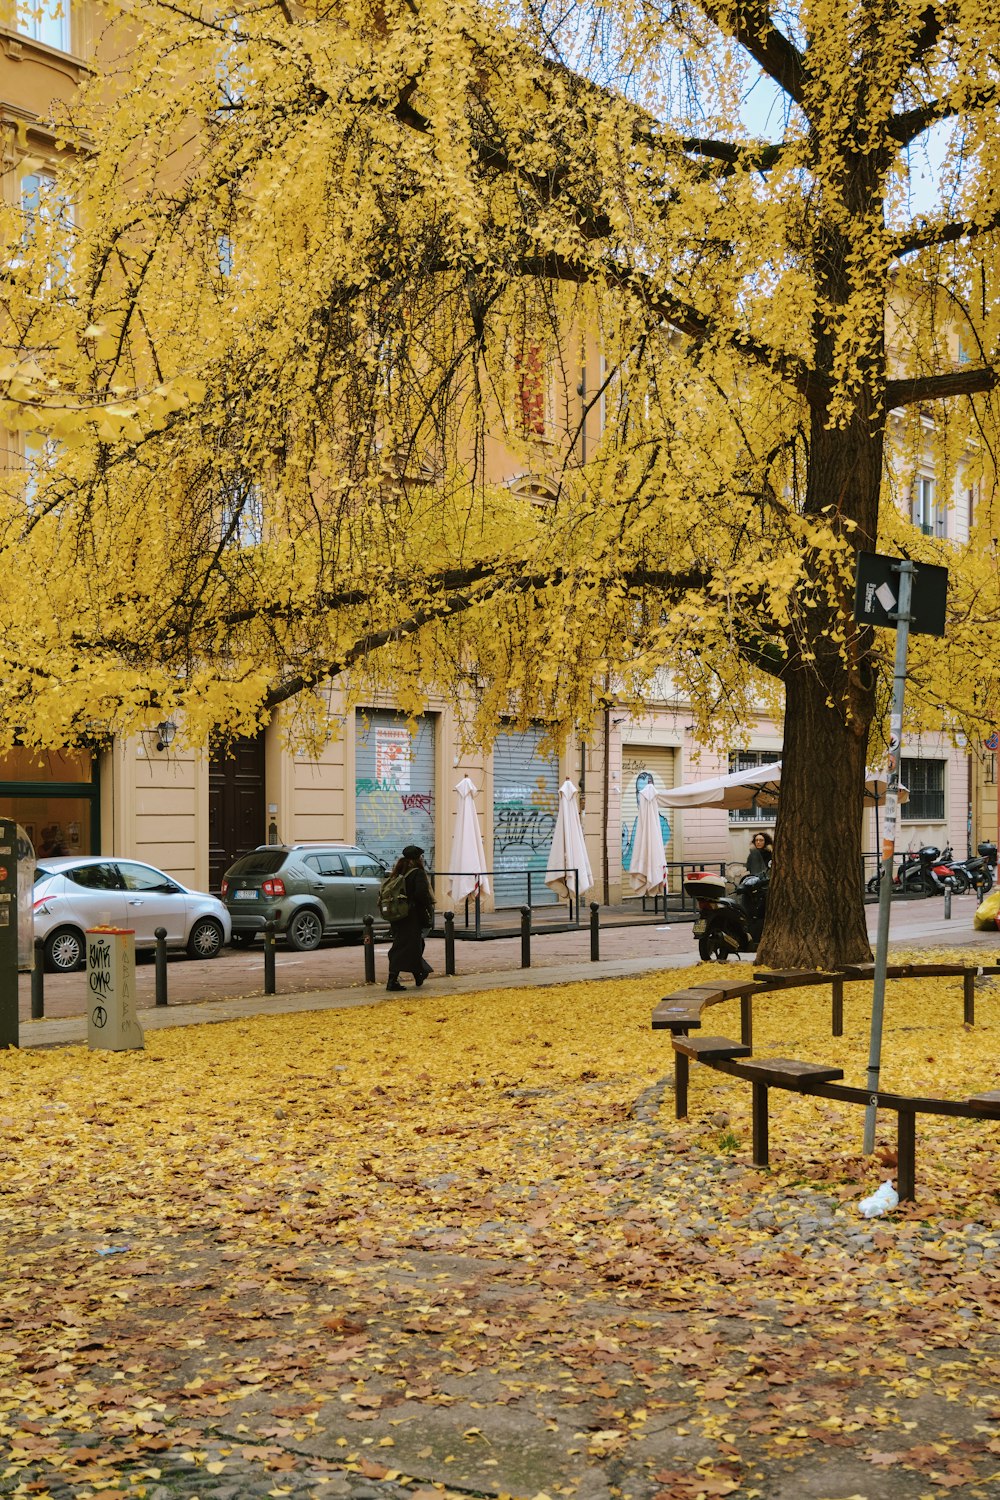 Ein Baum mit gelben Blättern auf dem Boden